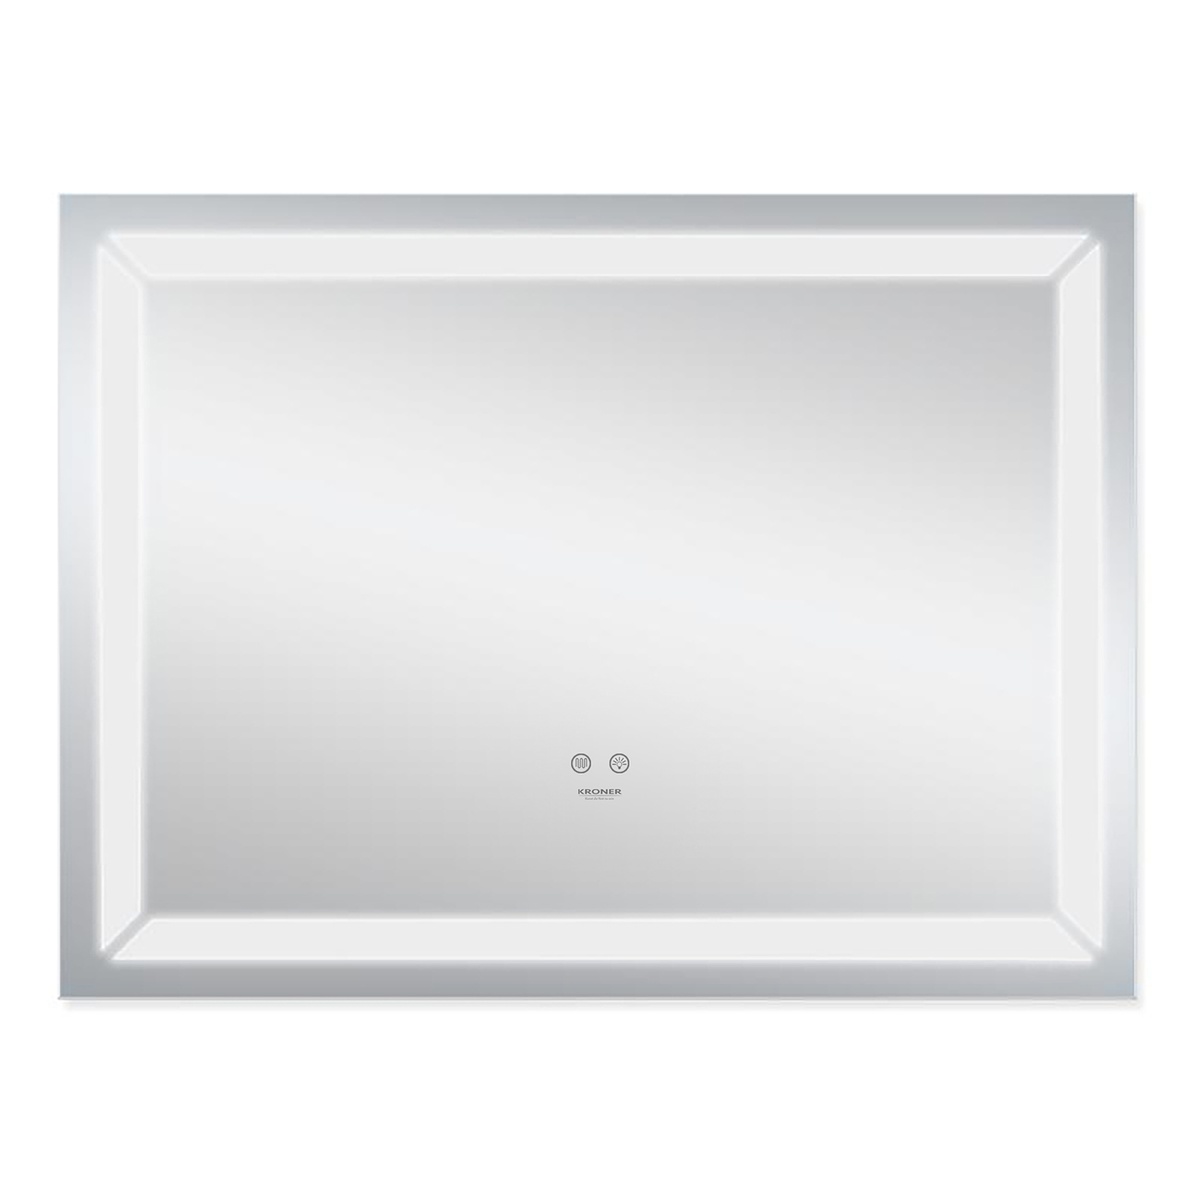 Зеркало в ванную KRONER Spiegel 60x80см c подсветкой сенсорное включение антизапотевание прямоугольное CV030030